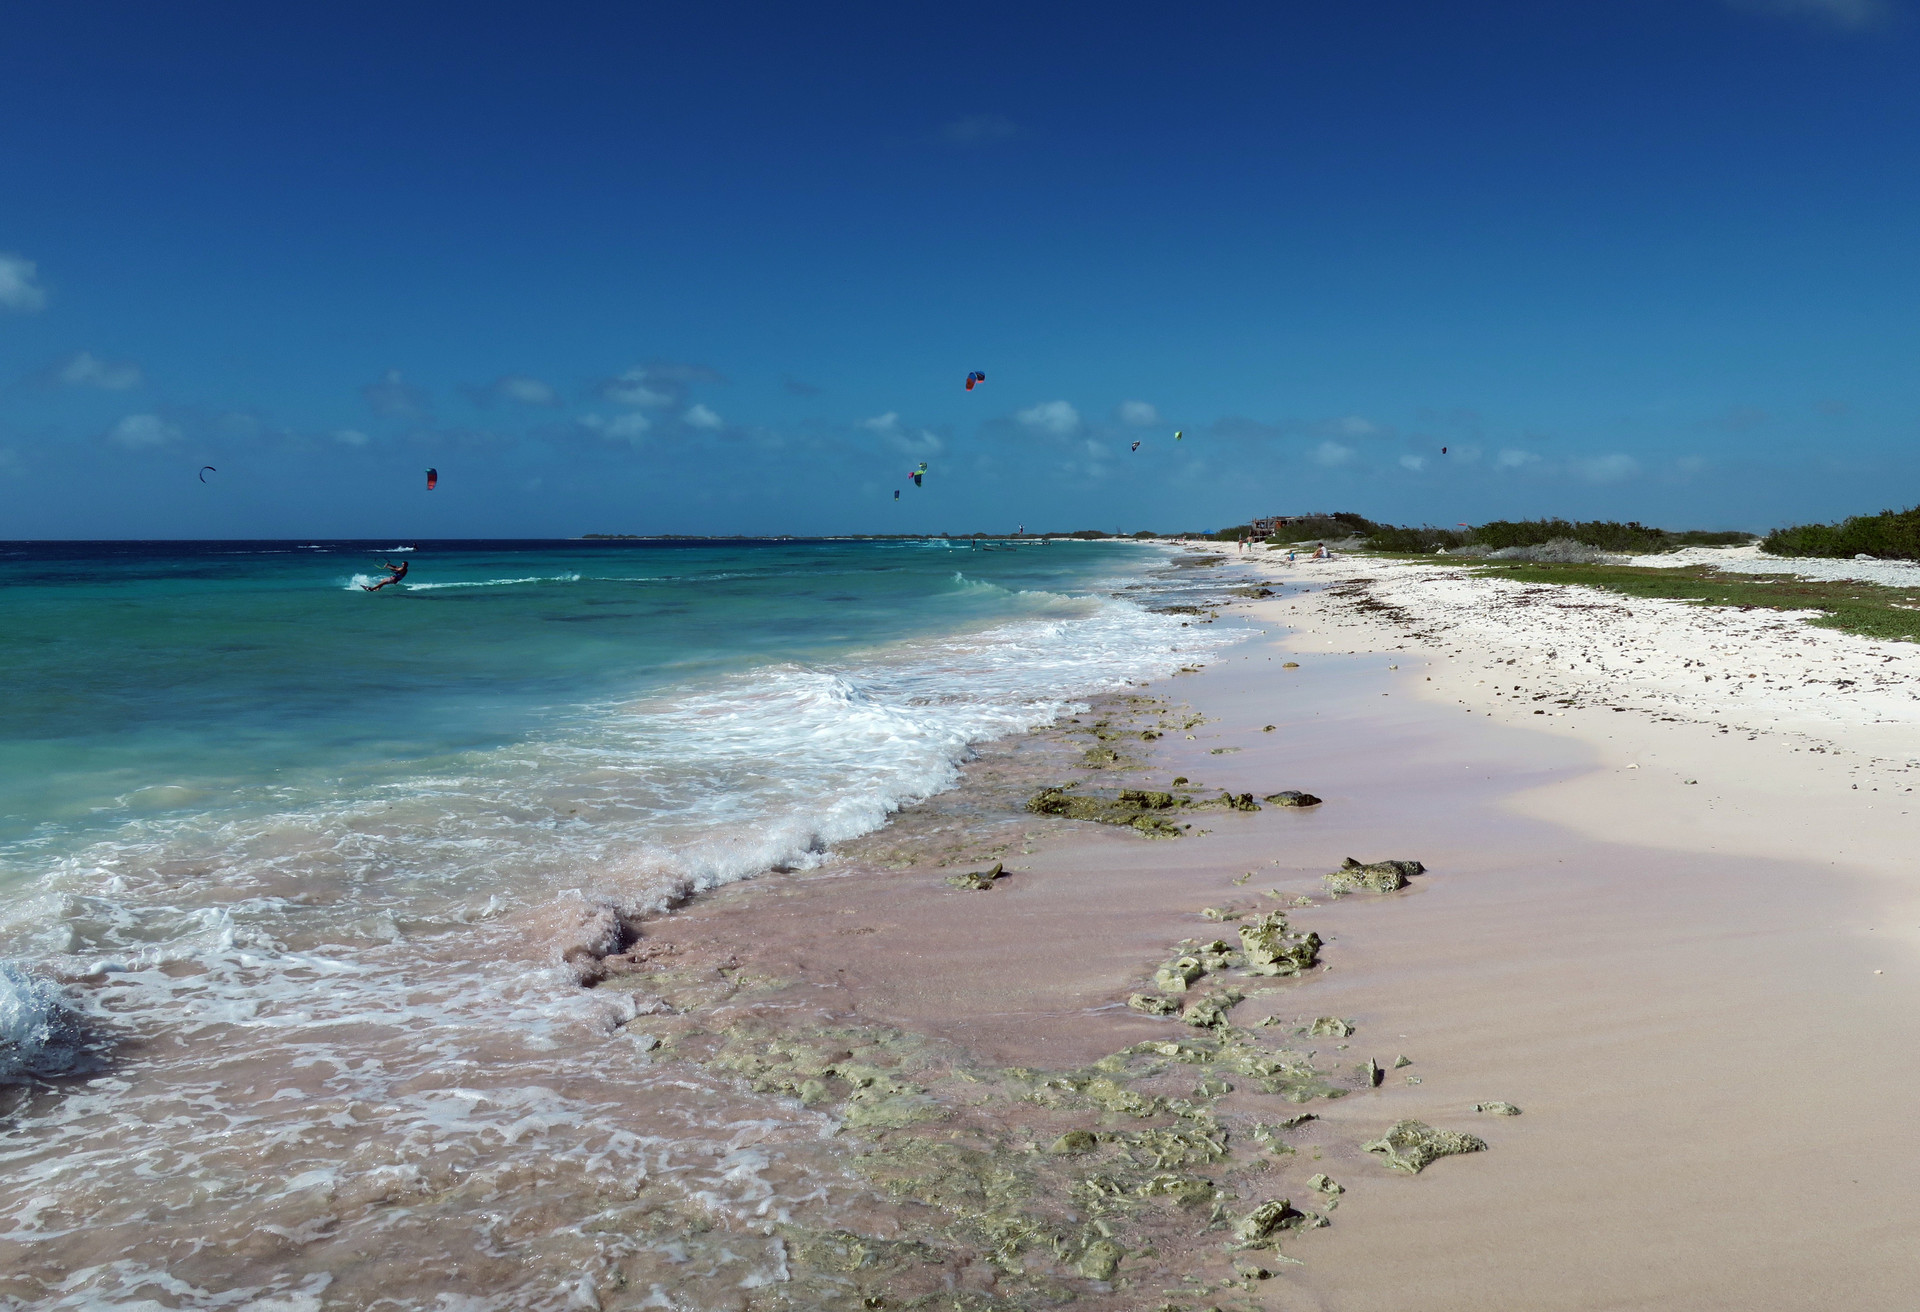 Op het idyllische eiland Bonaire kun je fantastisch kitesurfen, duiken en zonnebaden